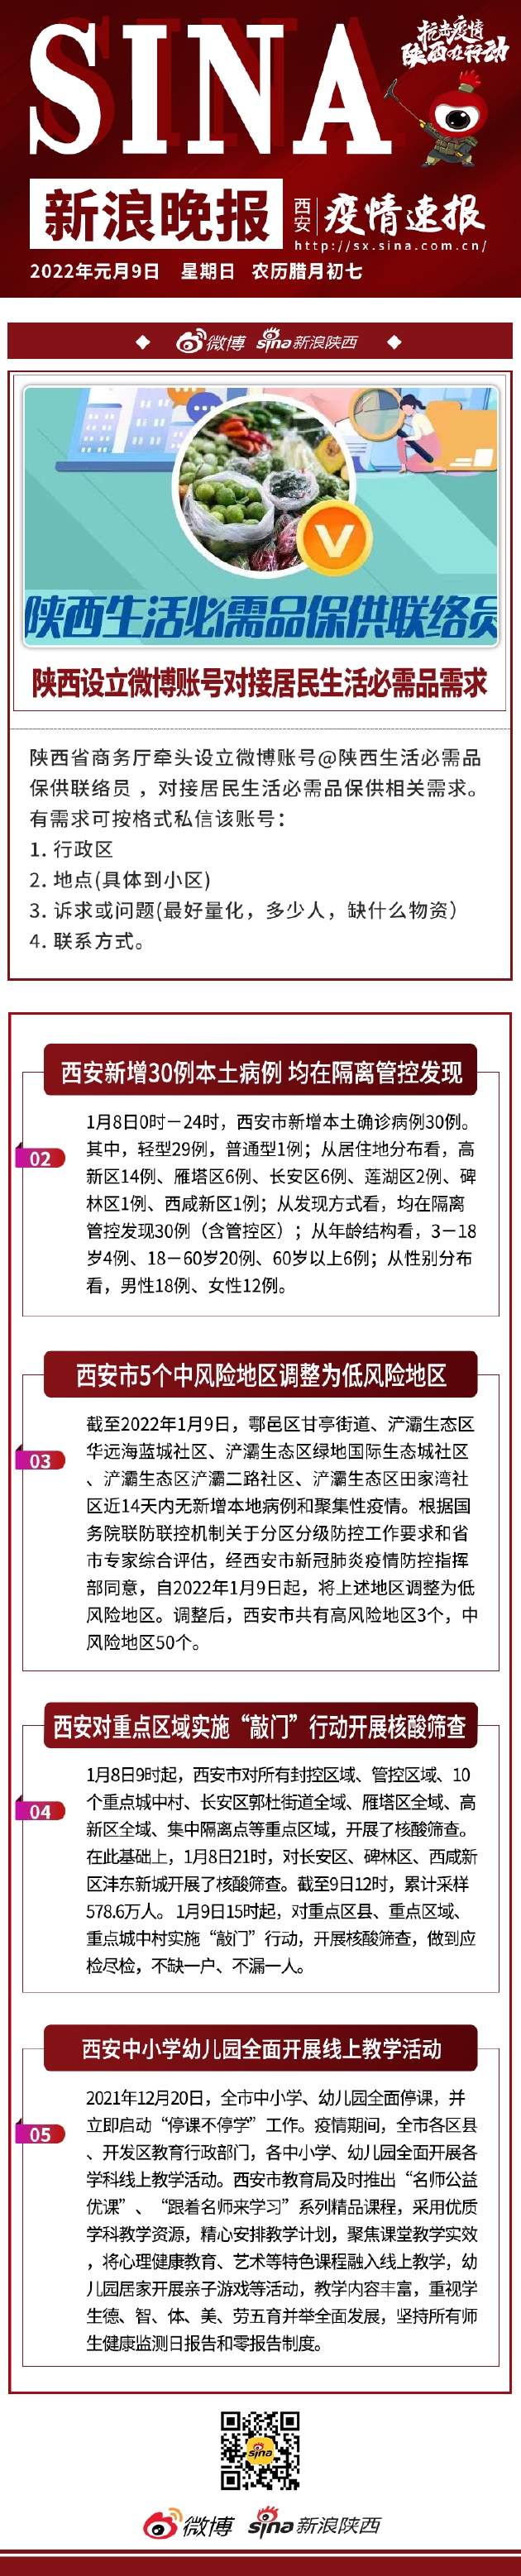 1月9日新浪晚报抗击疫情特刊：陕西设微博账号对接居民生活必需品需求